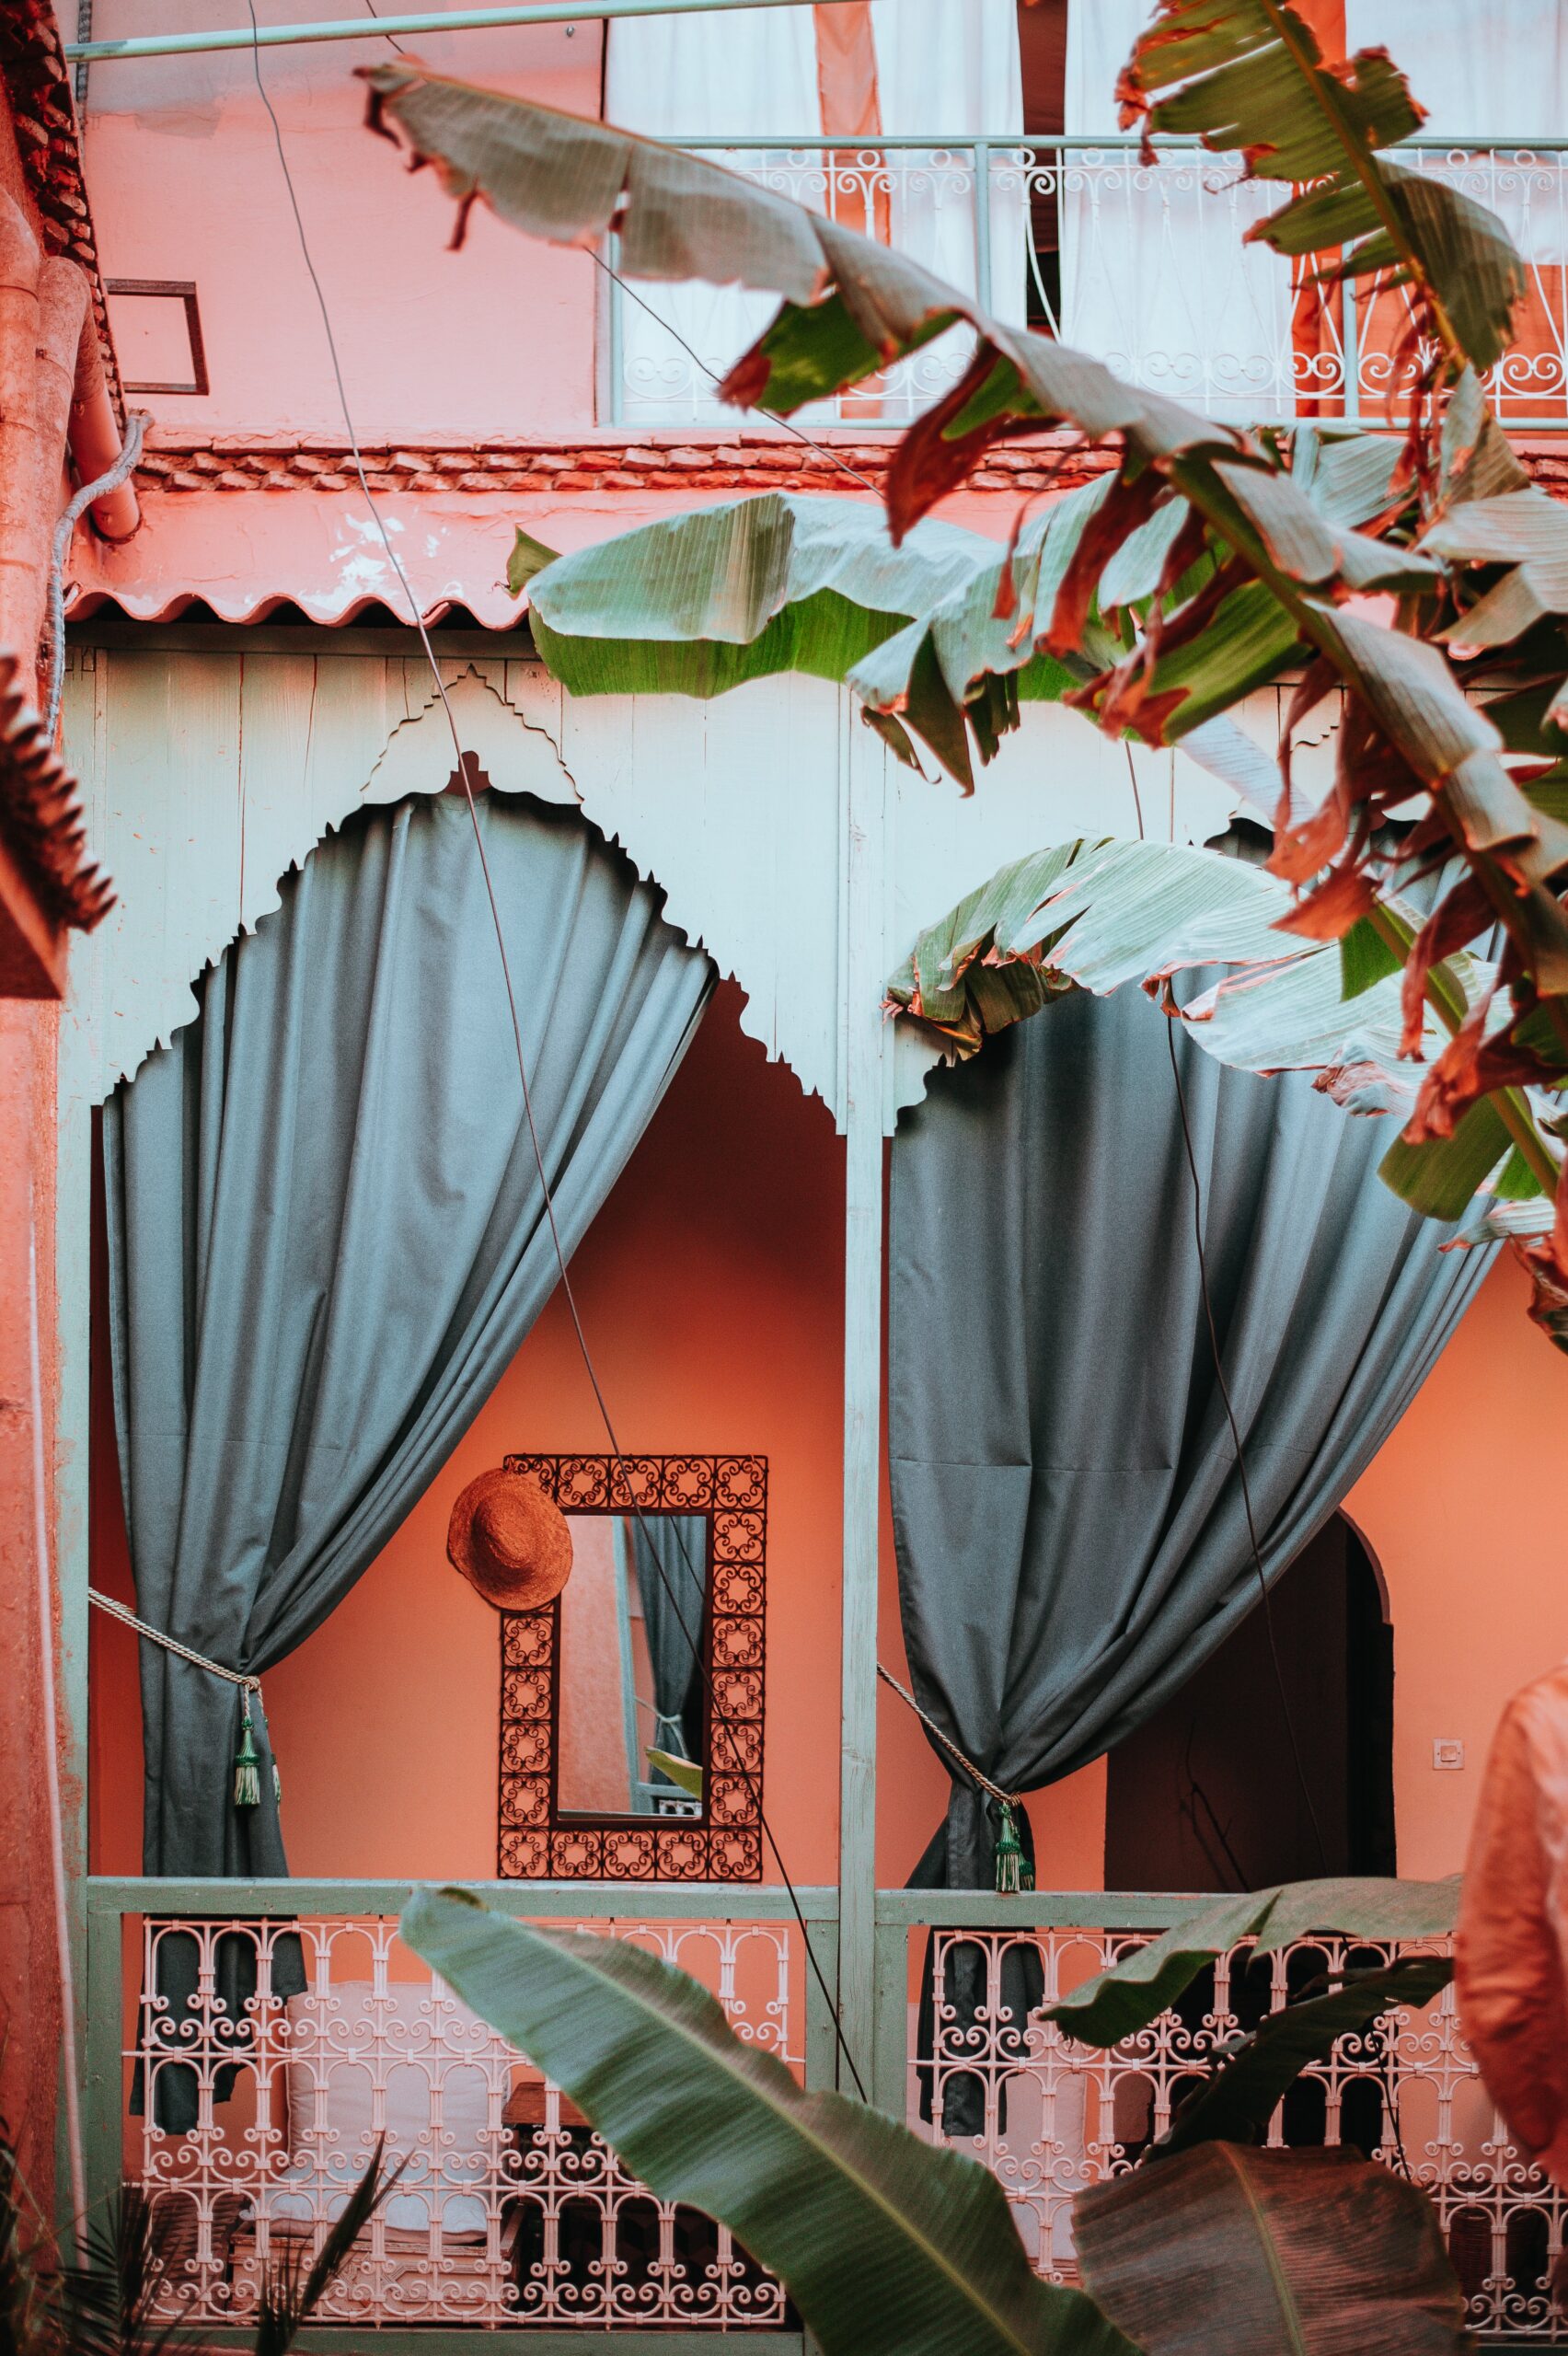 Hostal de estilo al andalus en venta en el centro histórico de Córdoba (2.500.000€)